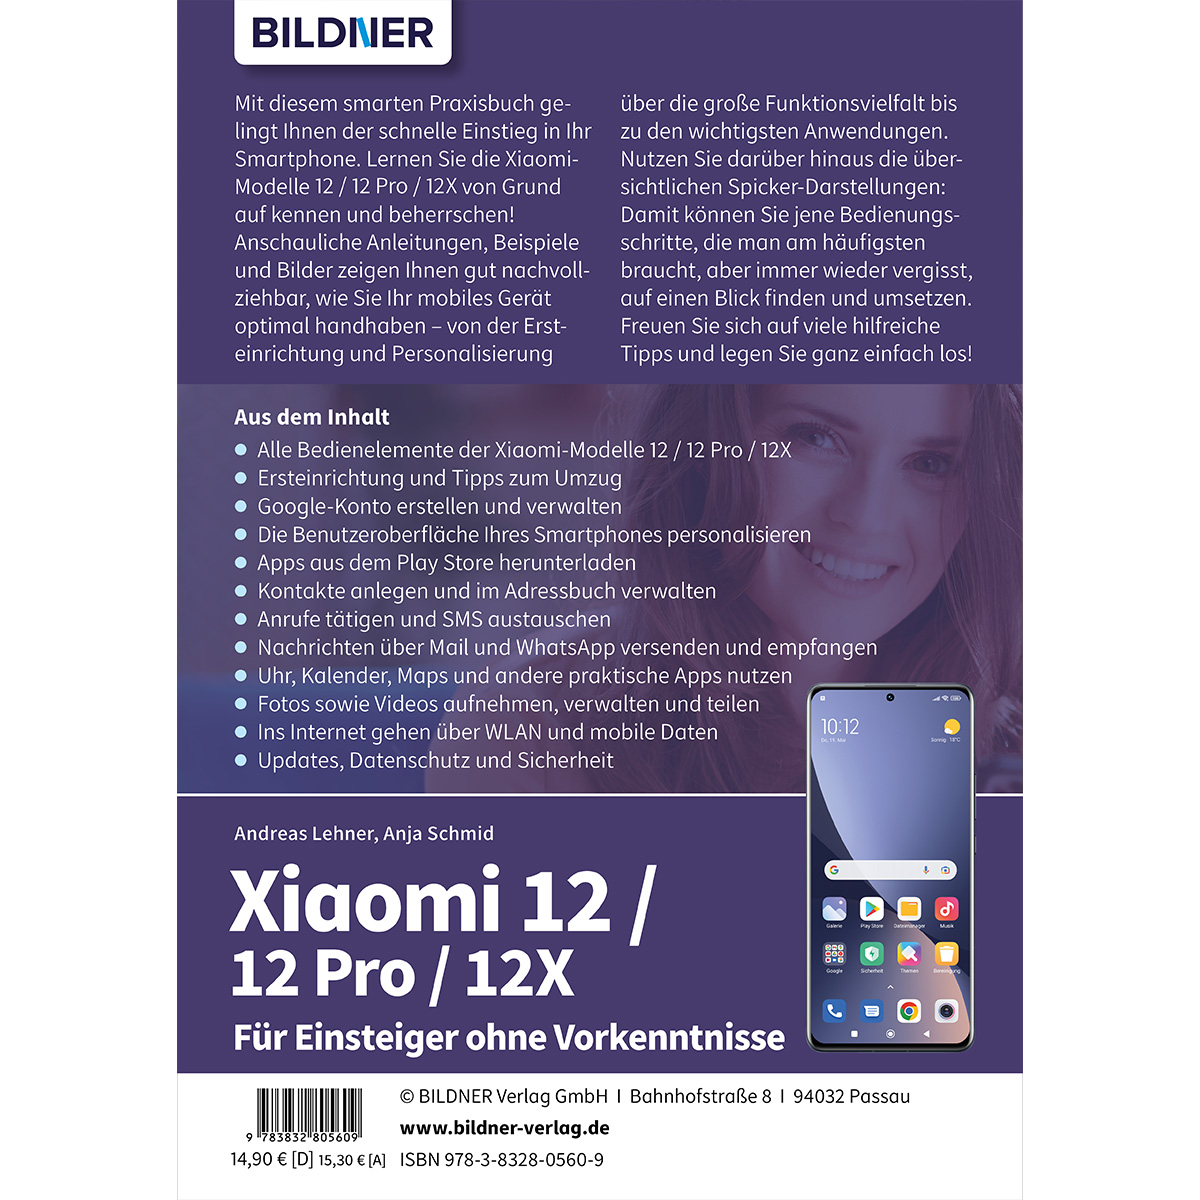 ohne Xiaomi 12X  Vorkenntnisse / Einsteiger 12 Für Pro - / 12